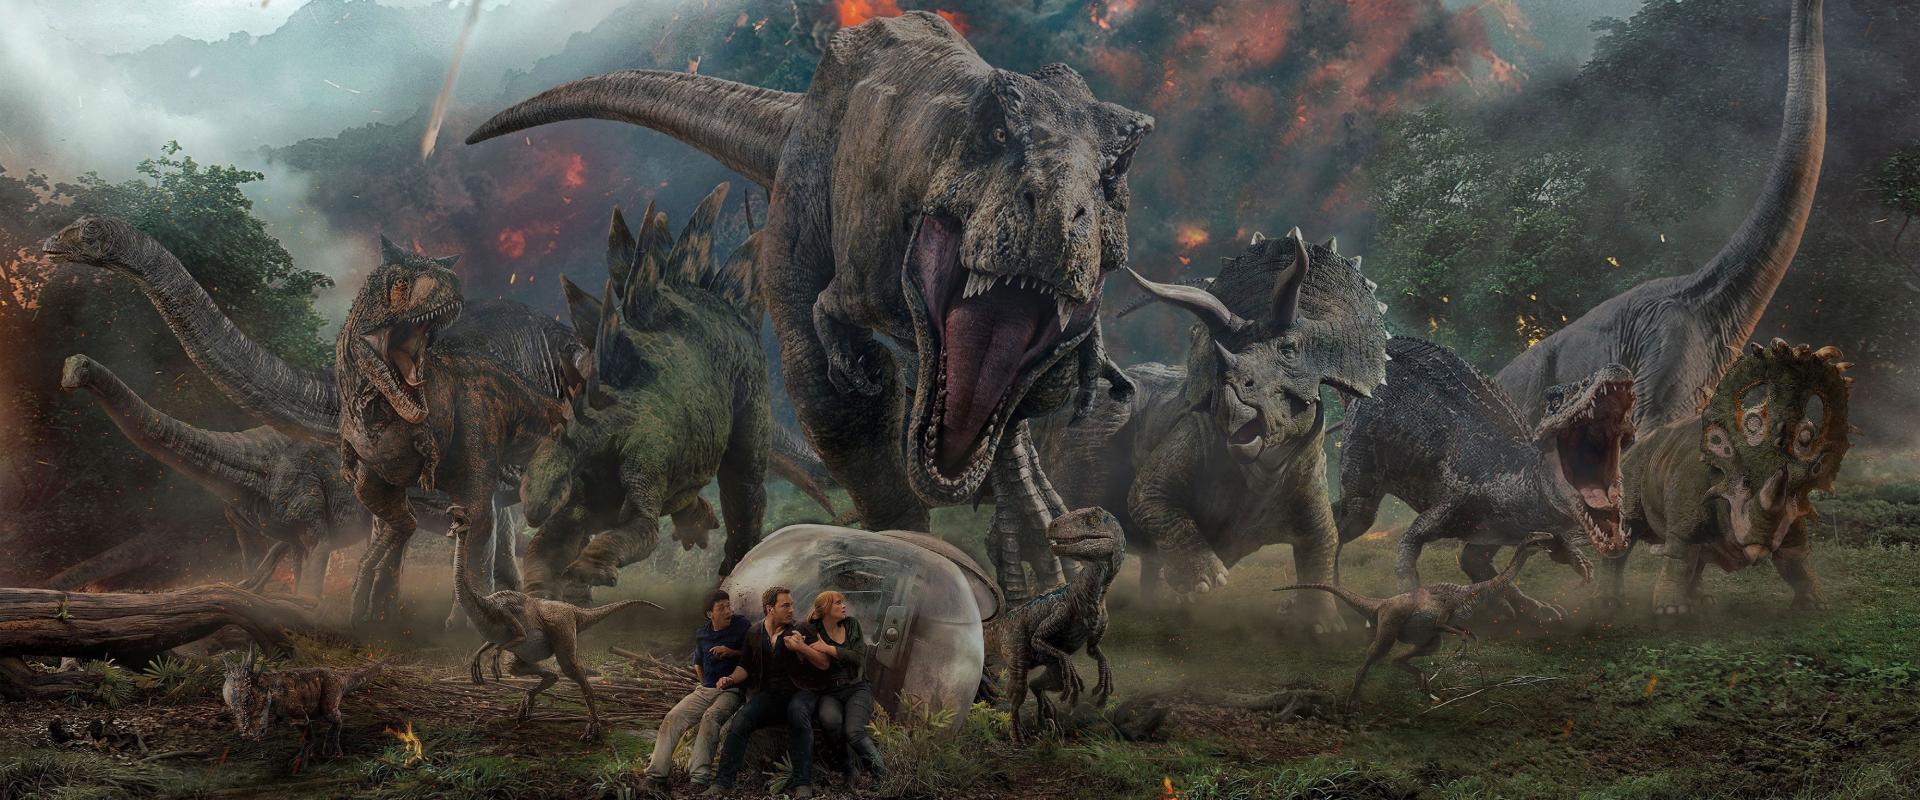 Jön az új Jurassic World film, amely új irányba tereli a franchise-t